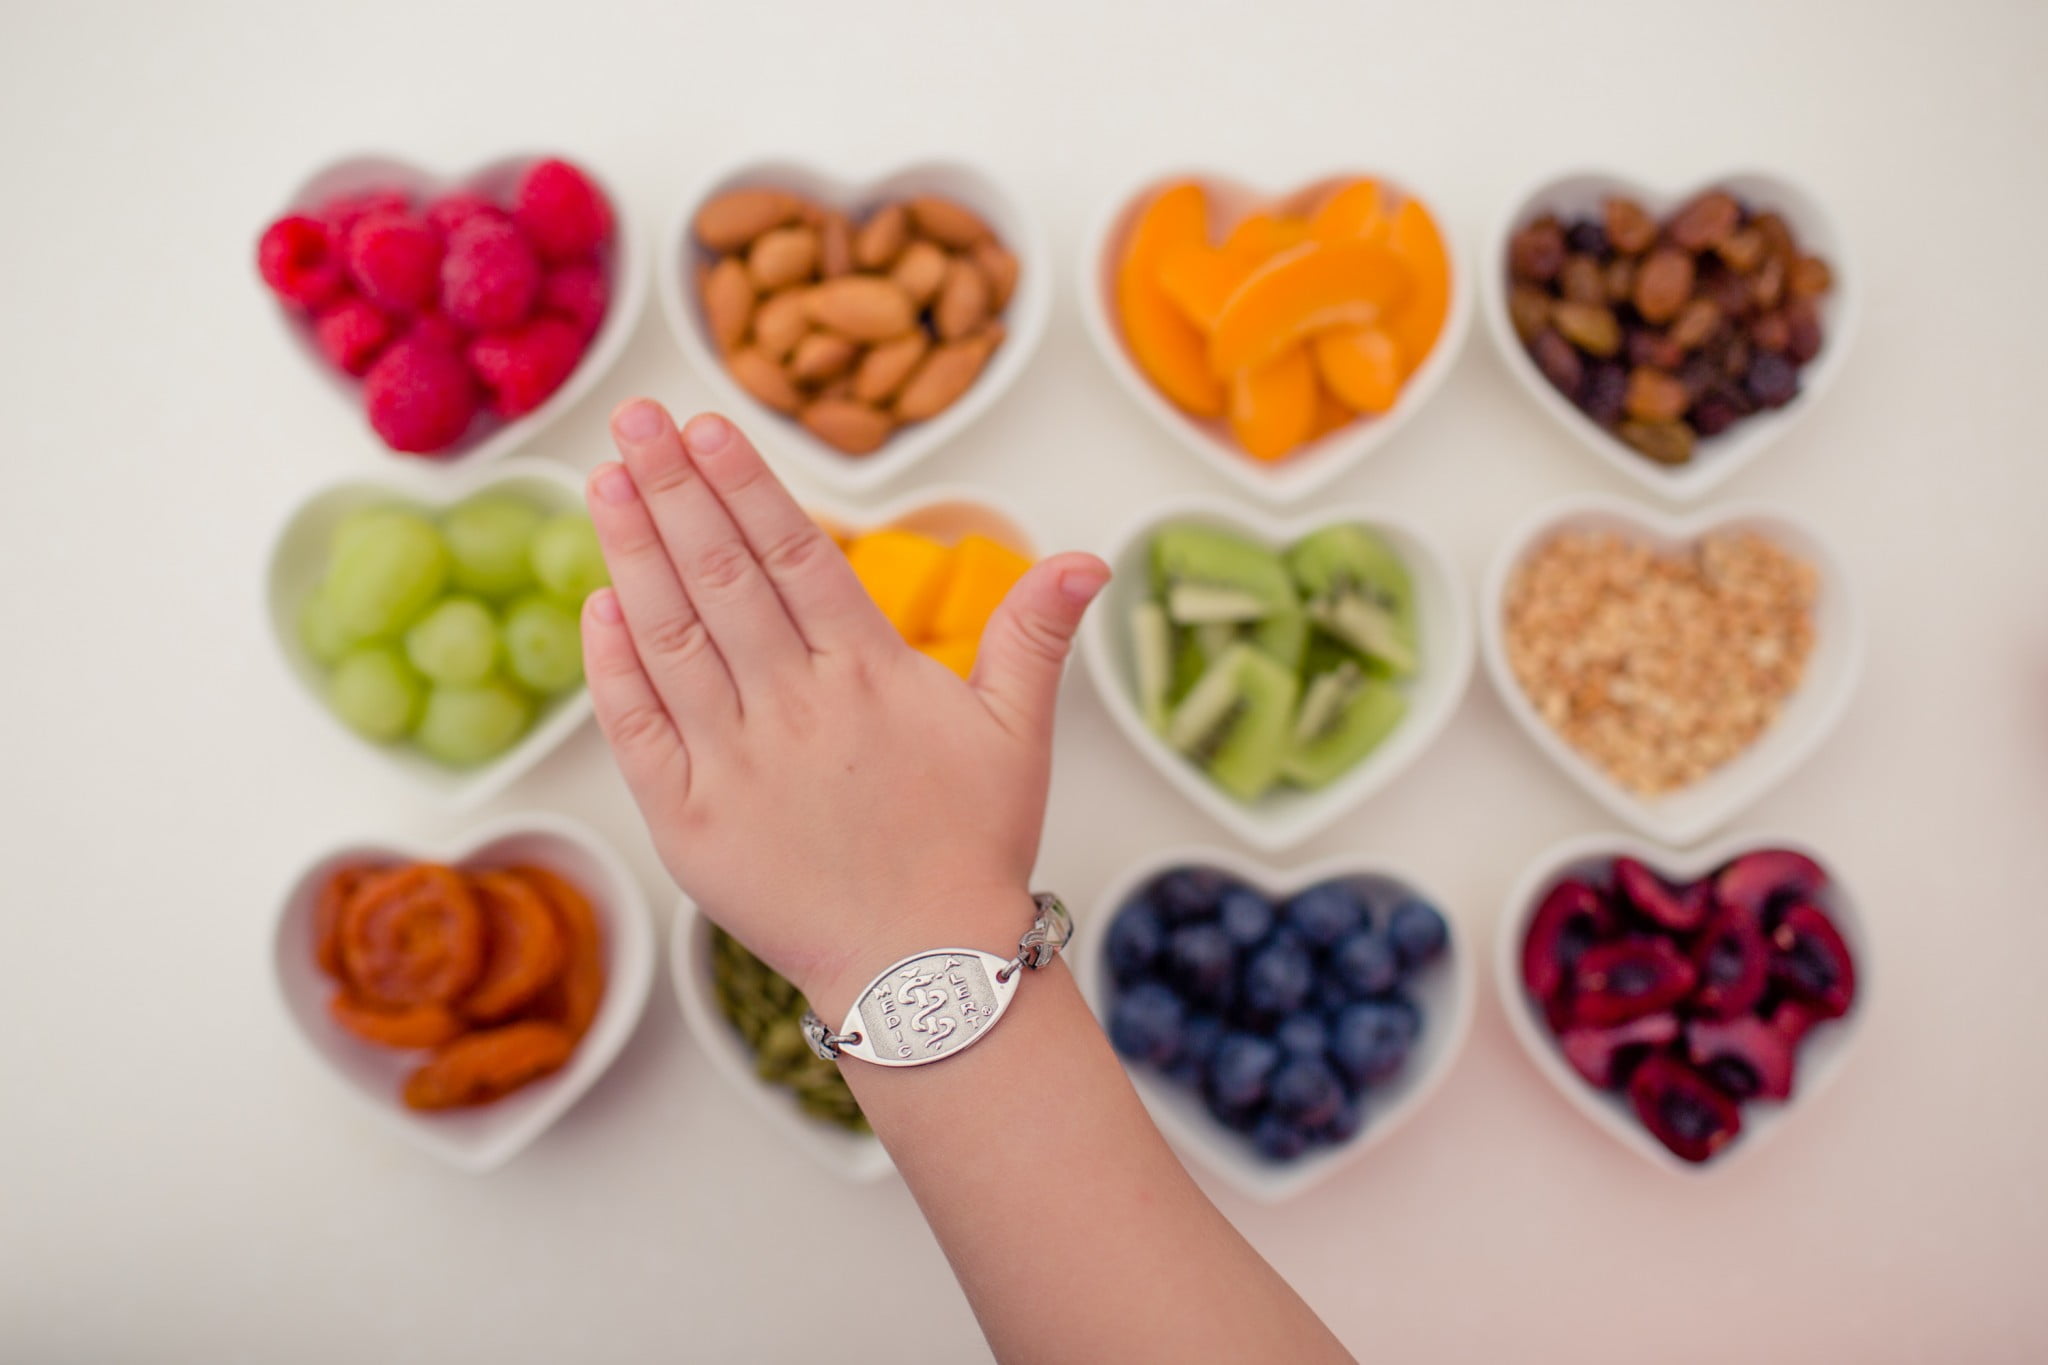 MedicAlert bracelet on wrist on background of food in heart shaped bowls